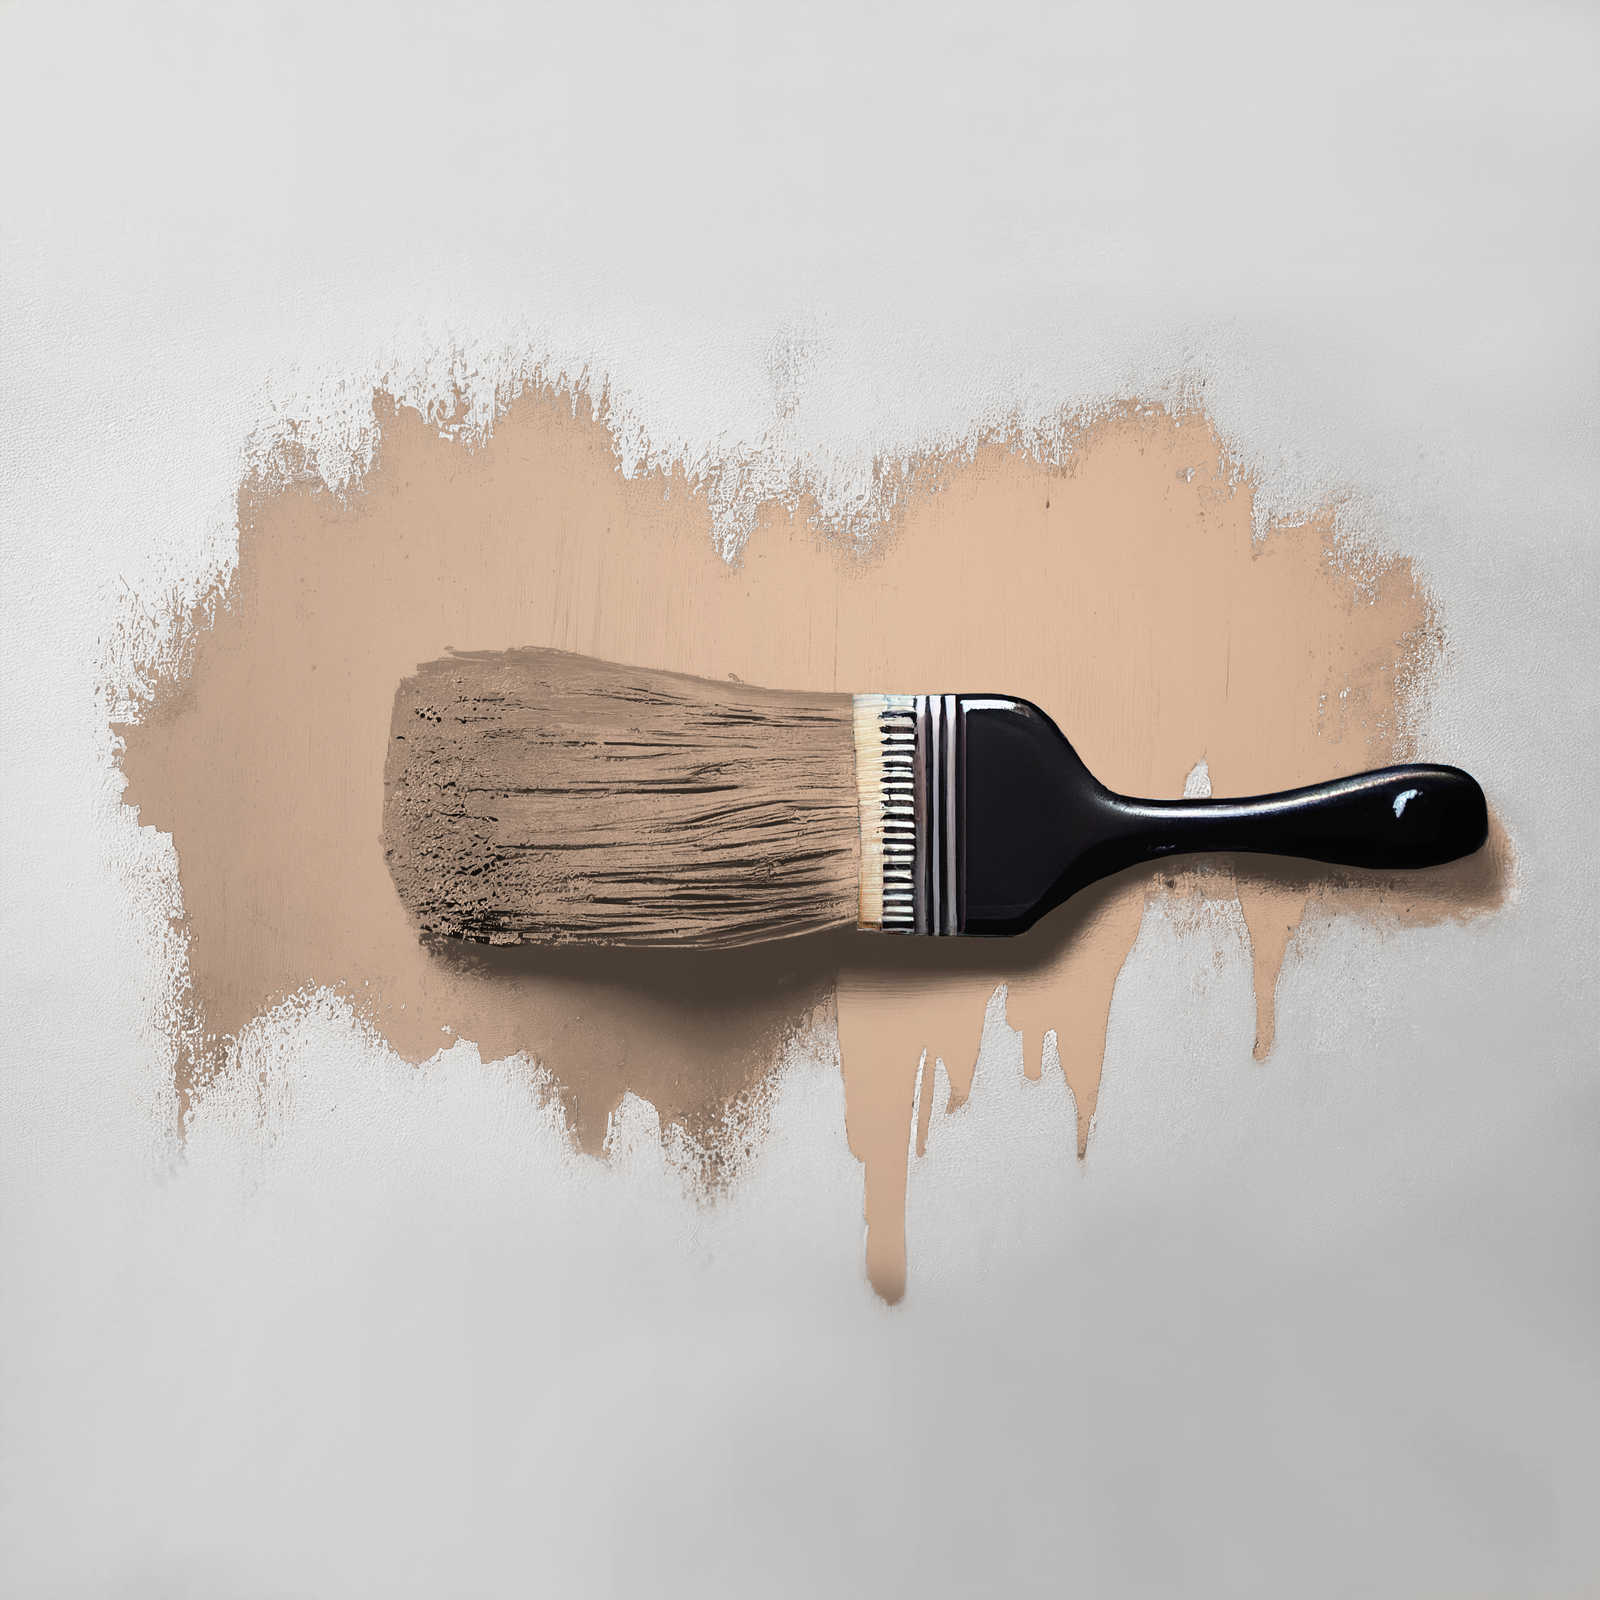             Peinture murale TCK6021 »Lovely Lentil« en beige chaud – 5,0 litres
        